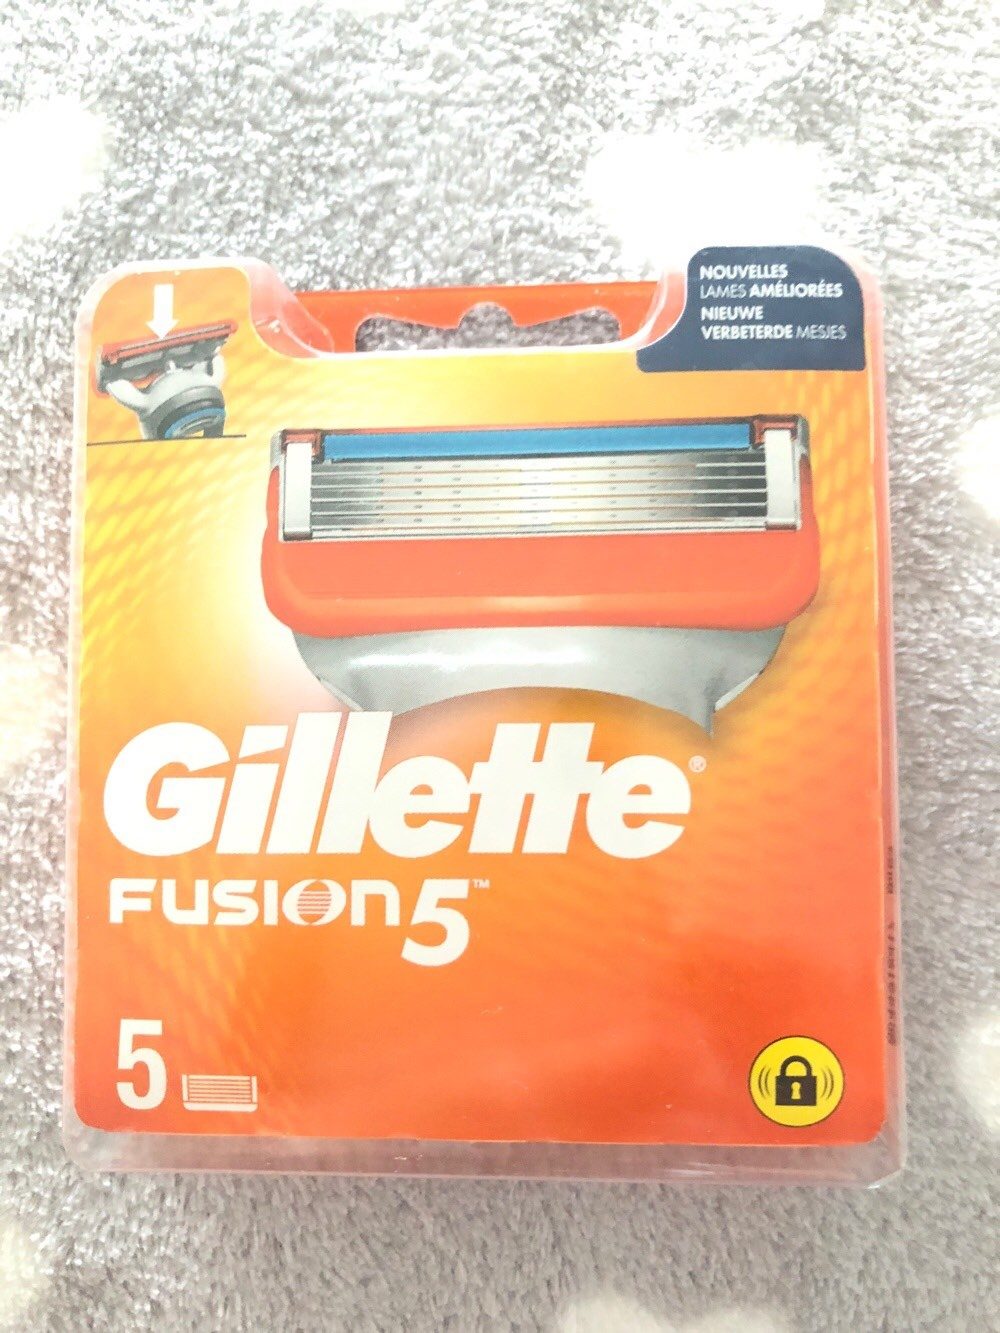 gillette fusion 5 - Tuote - fr